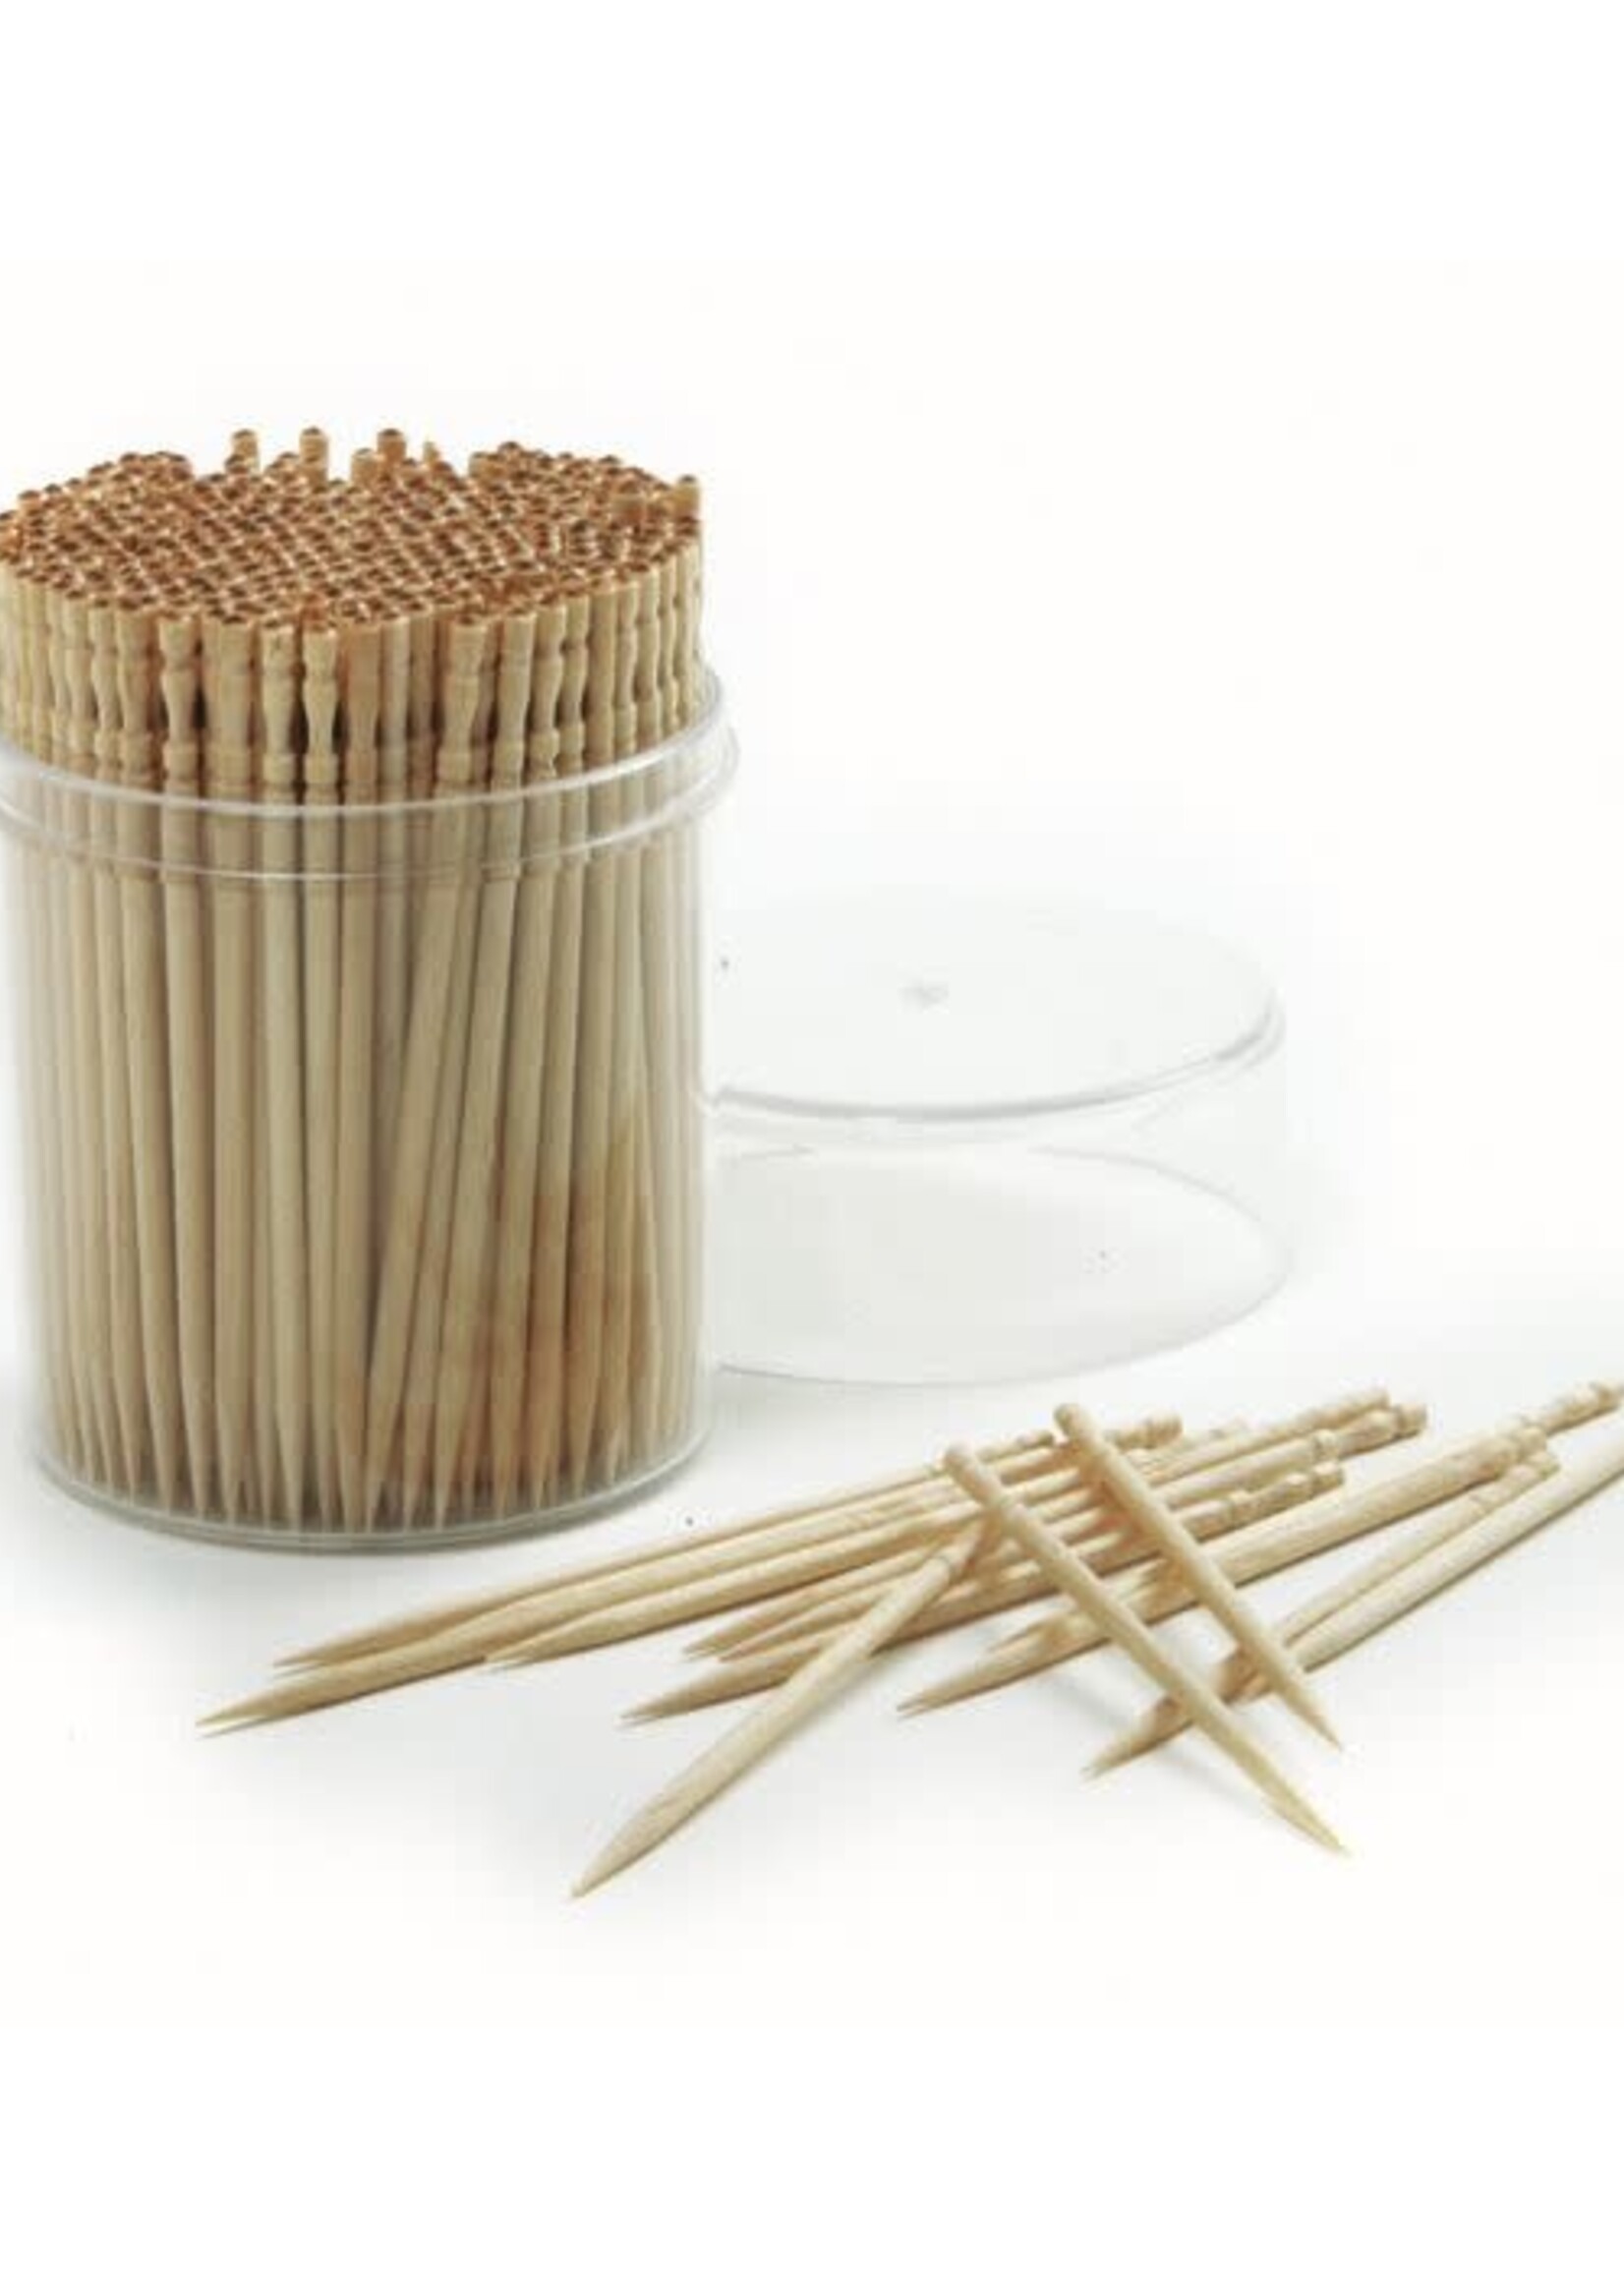 Norpro Ornate Wood Toothpicks